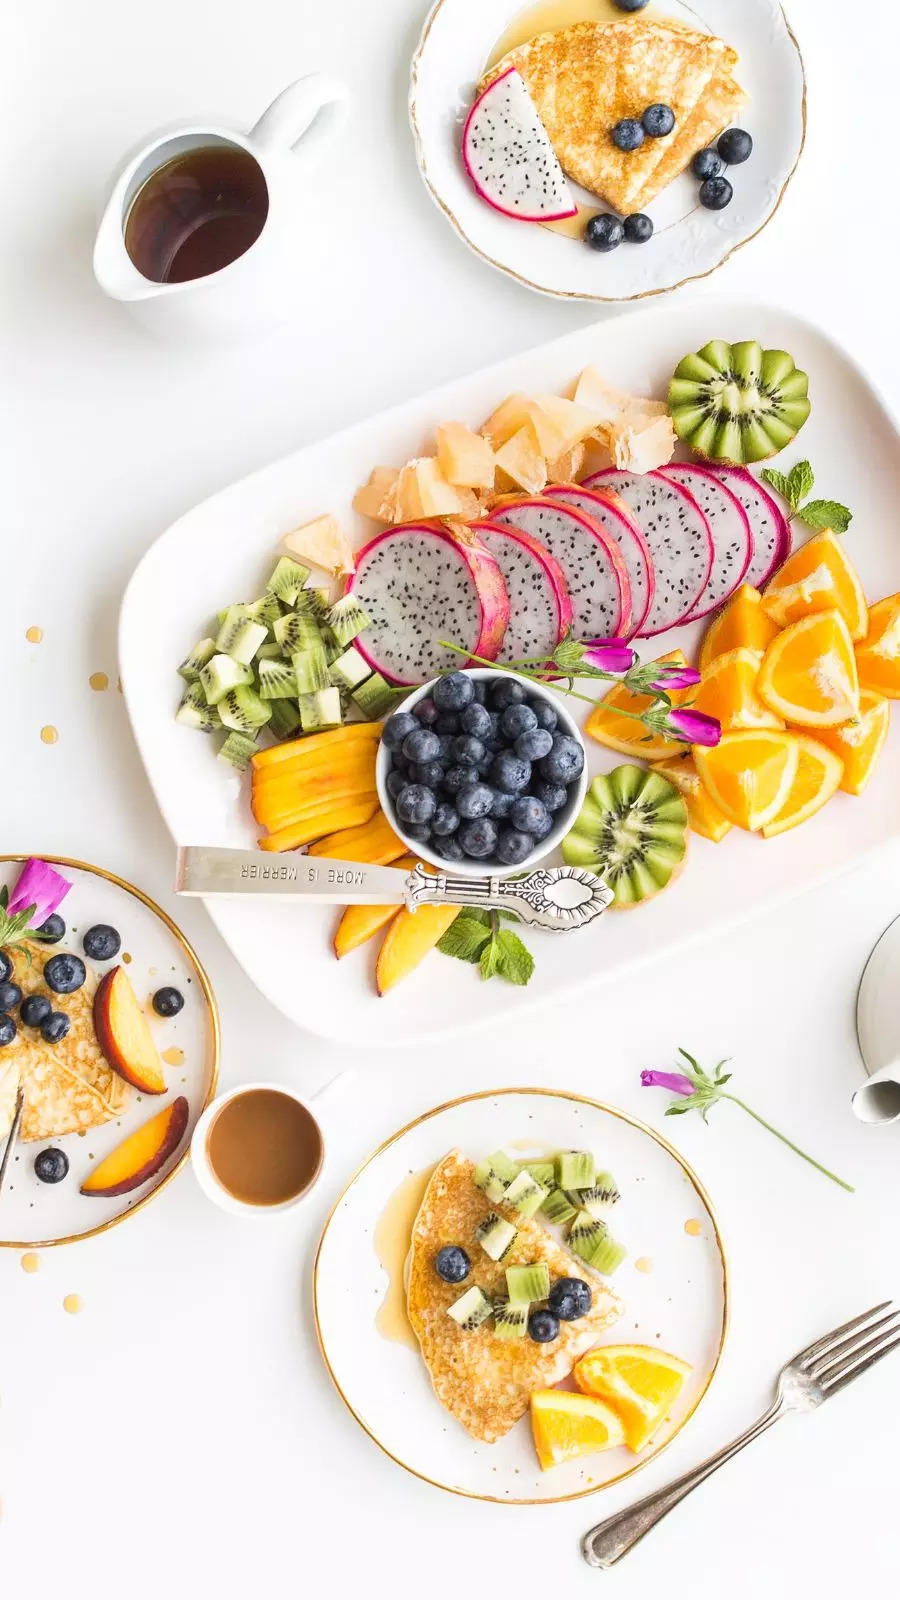 Light, refreshing, and vitamin-rich summer breakfast ideas